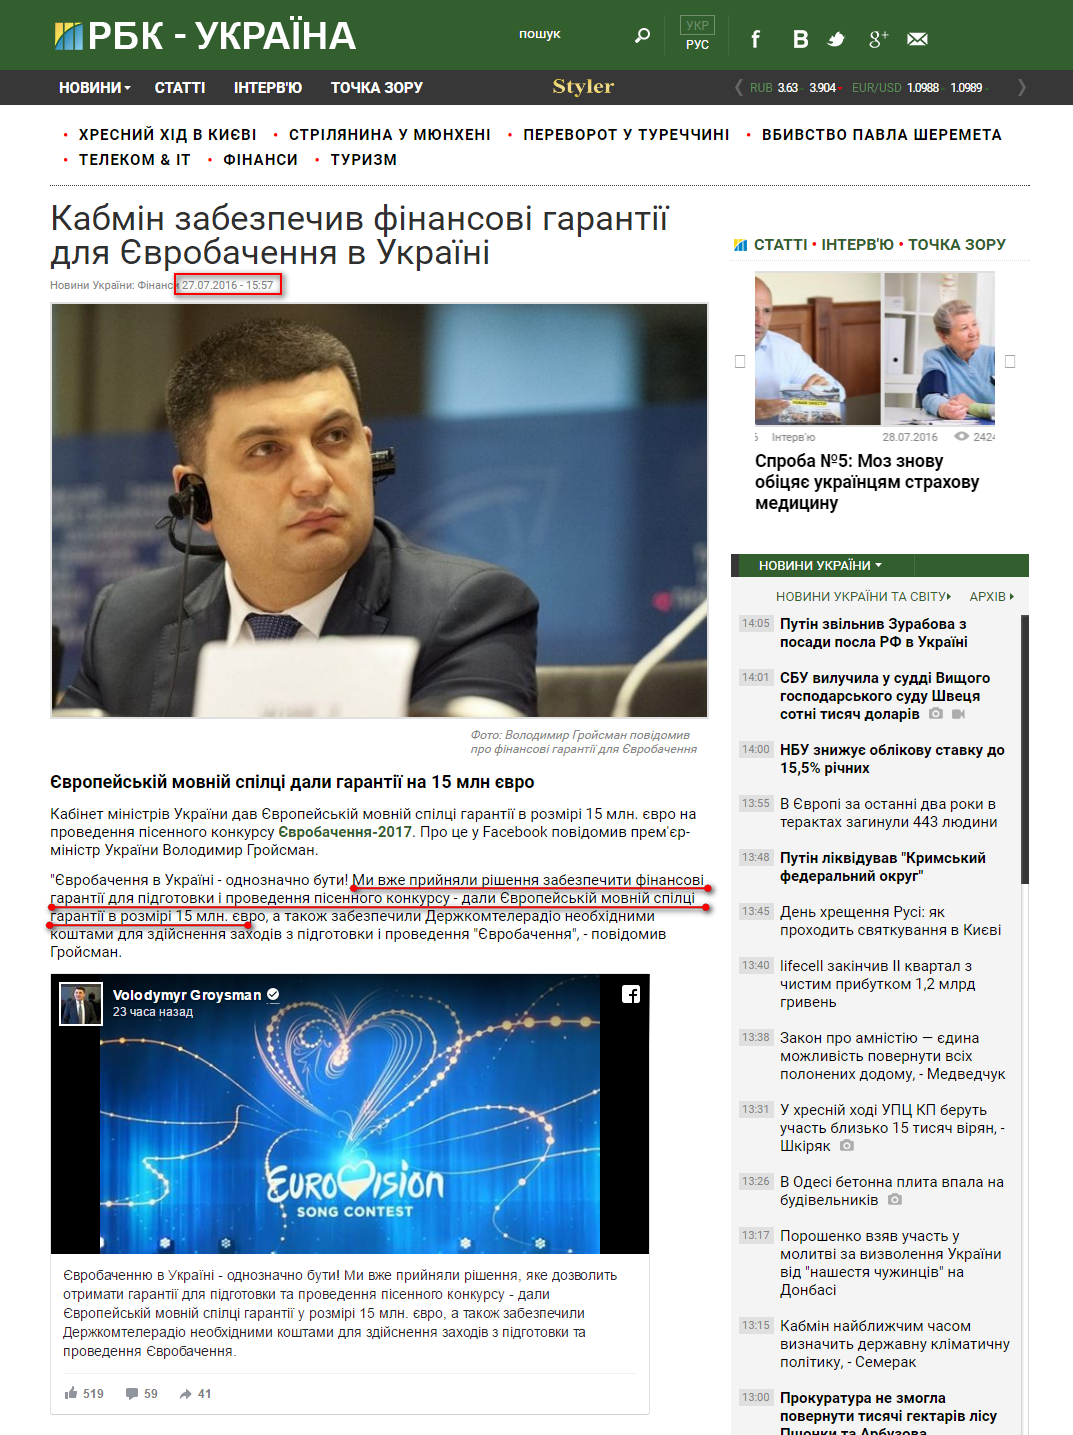 https://www.rbcua.com/ukr/news/kabmin-obespechil-finansovye-garantii-evrovideniya-1469624068.html